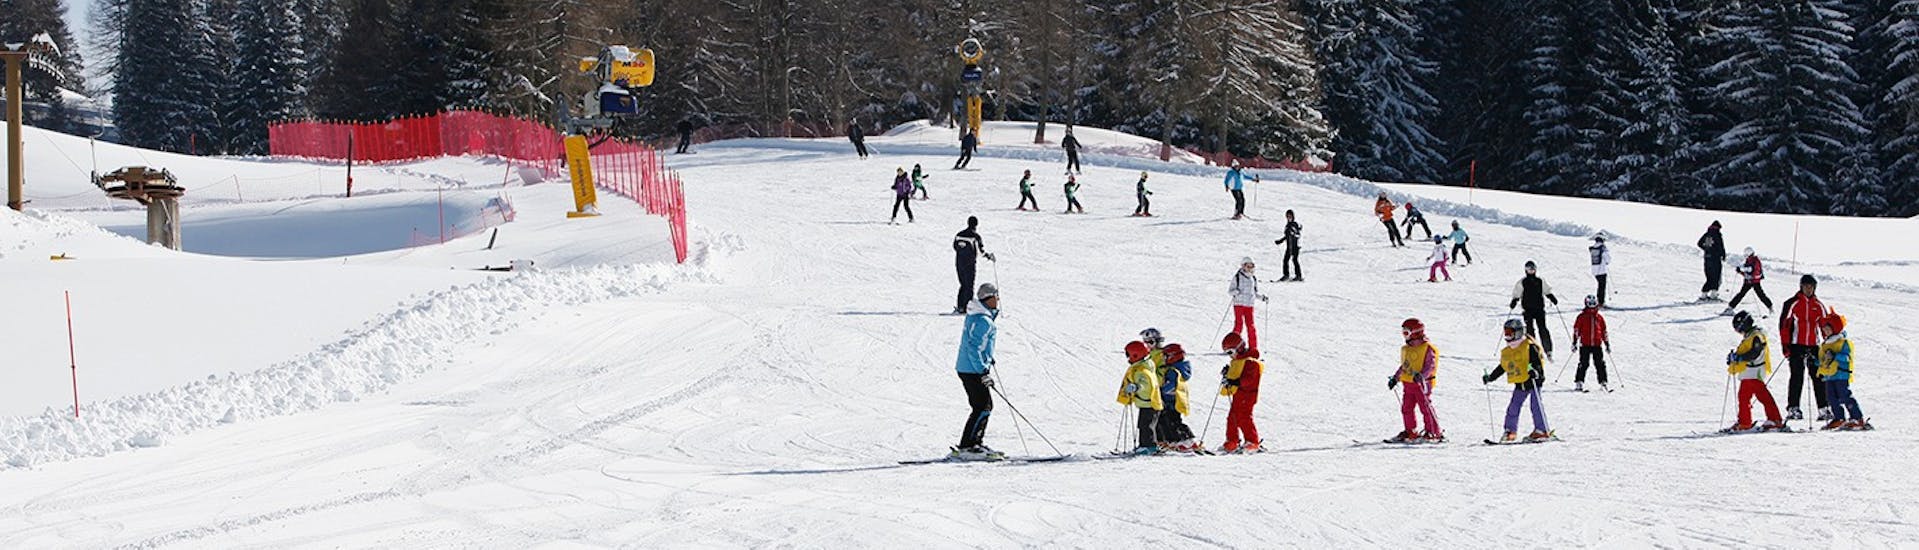 Pistes où se déroulent les Cours de ski pour Enfants (6-14 ans) pour Skieurs Expérimentés - Journée complète avec la Scuola Italiana Sci Folgaria-Fondo Grande.